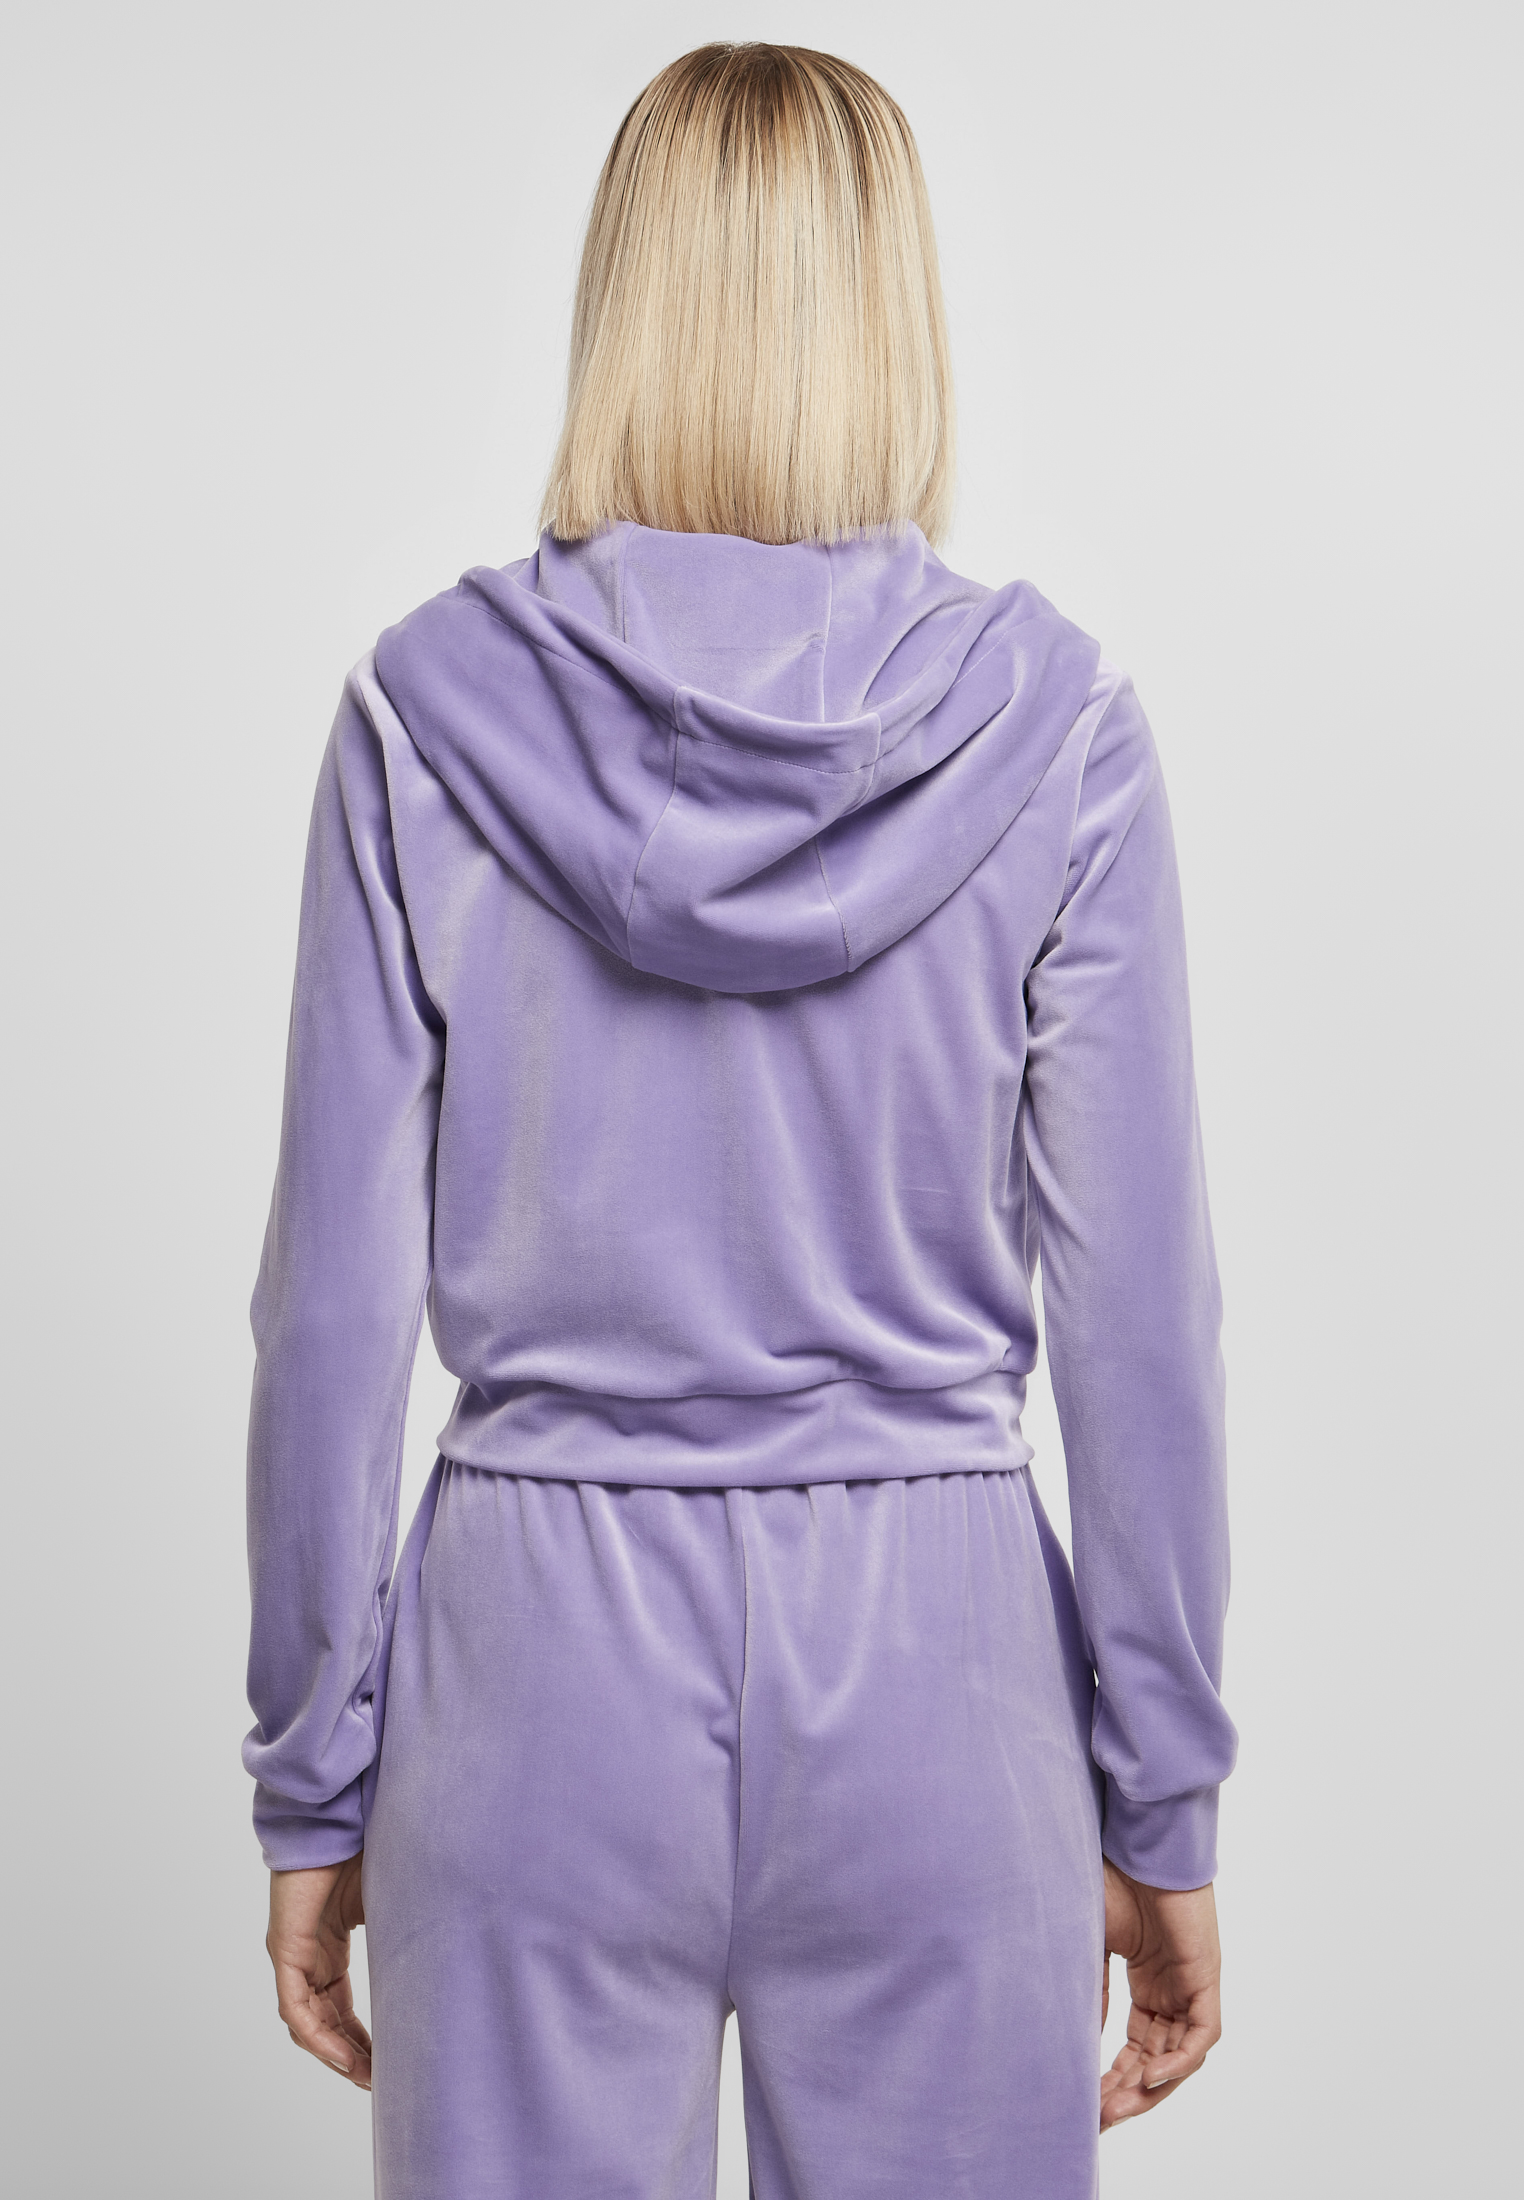 Zip Hoodies Ladies Short Velvet Zip Hoody in Farbe lavender